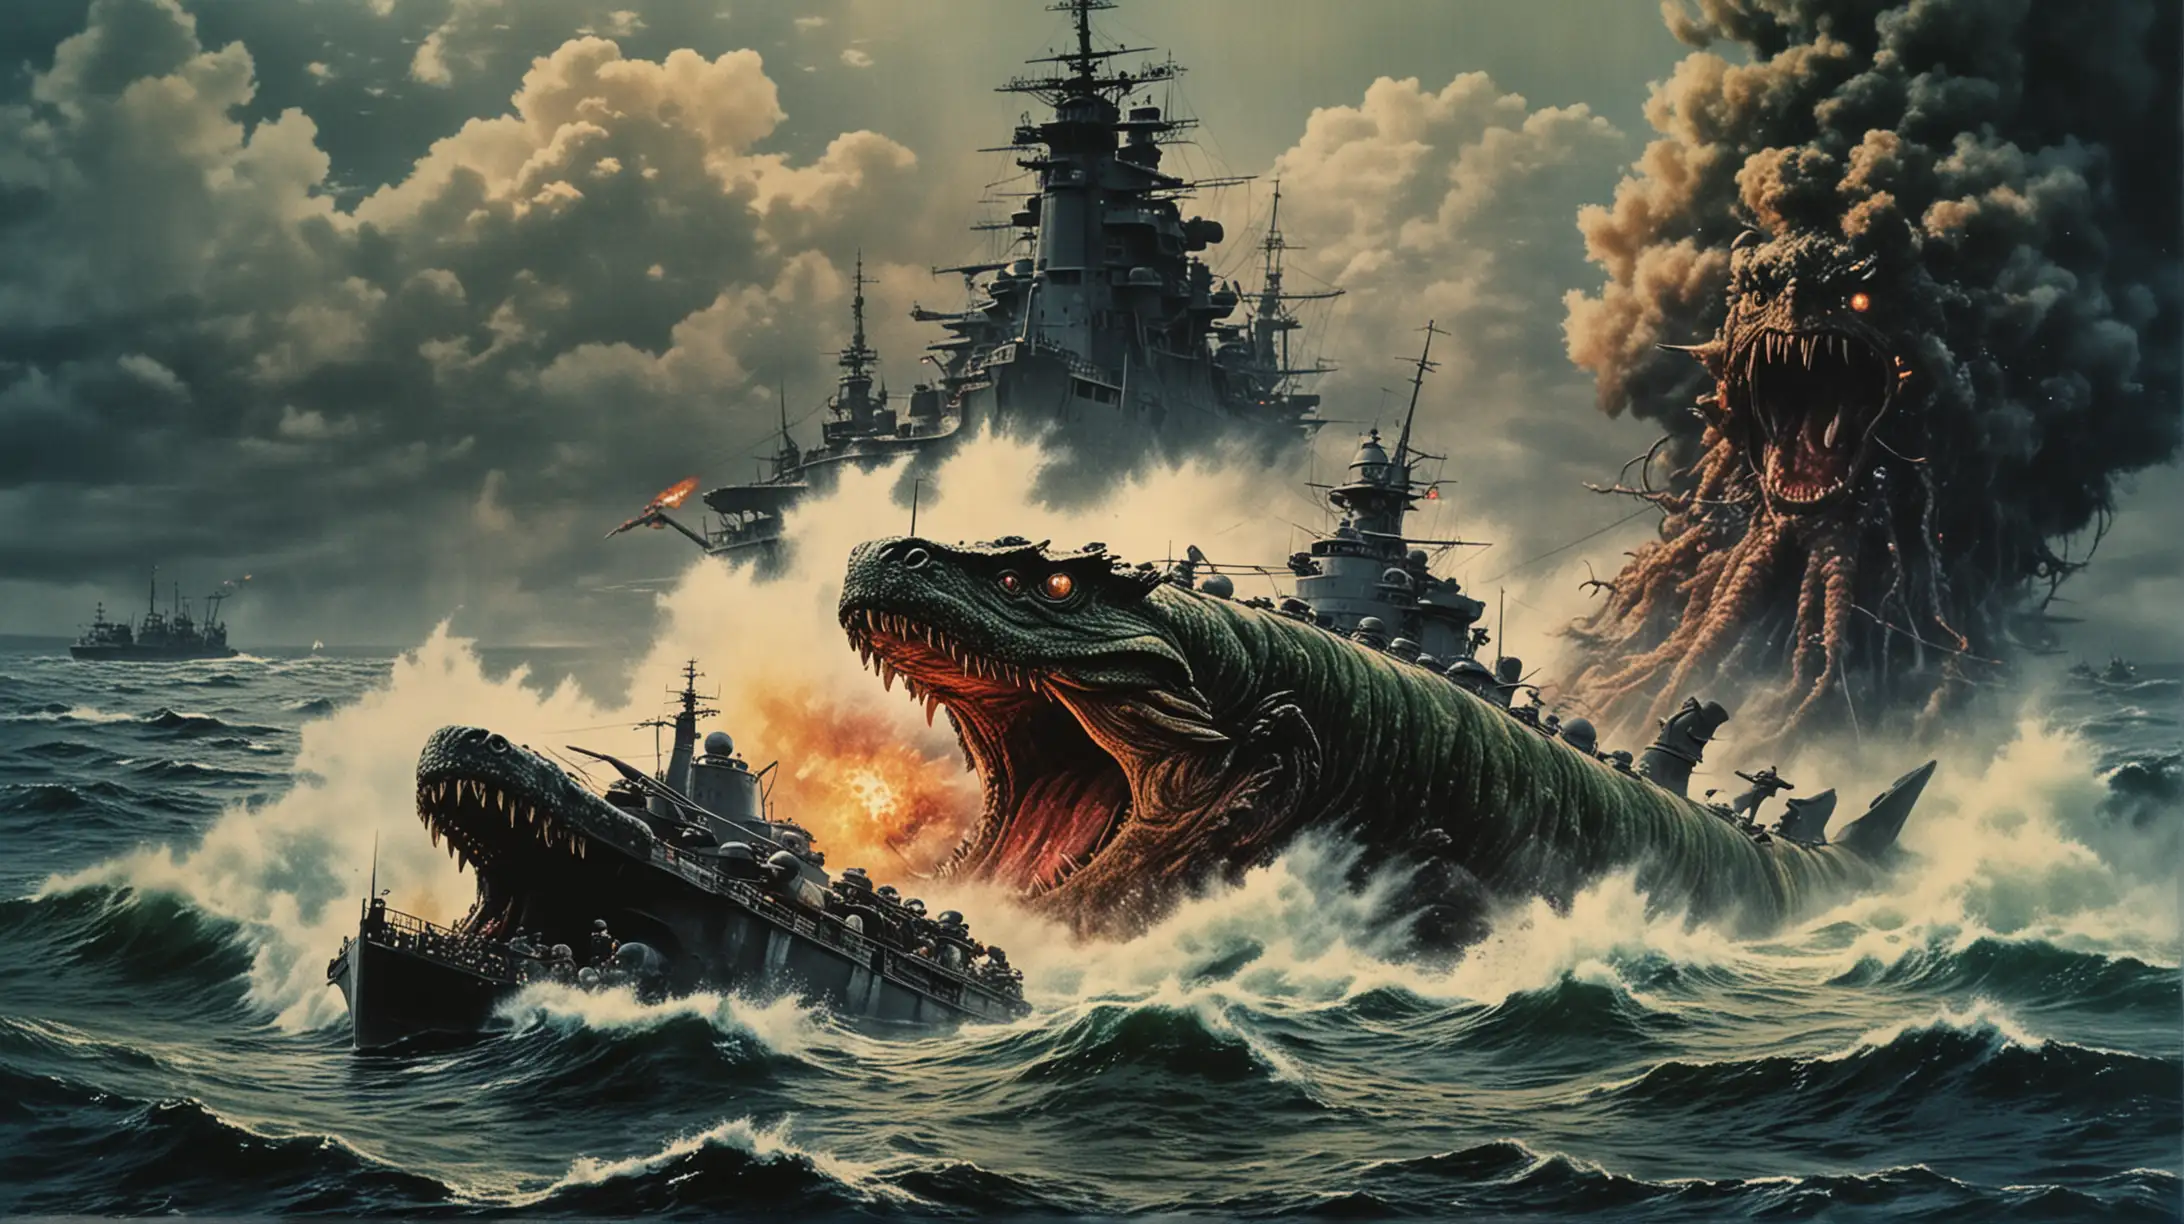 Epic Clash Giant Sea Monster Battles 1940s Battleship